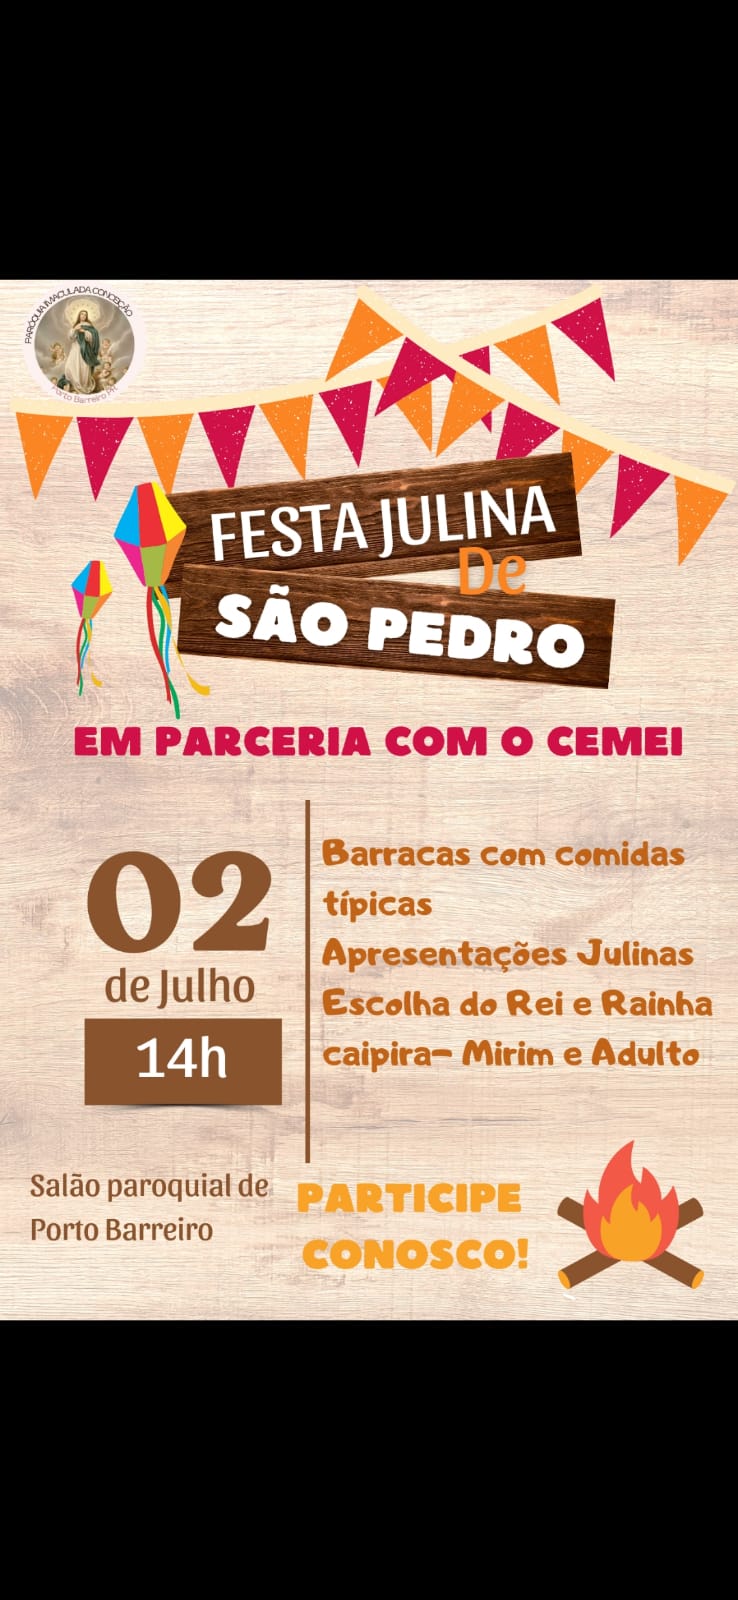 Festa Julina em Louvor a São Pedro Acontece Neste Sábado (02) em Porto Barreiro